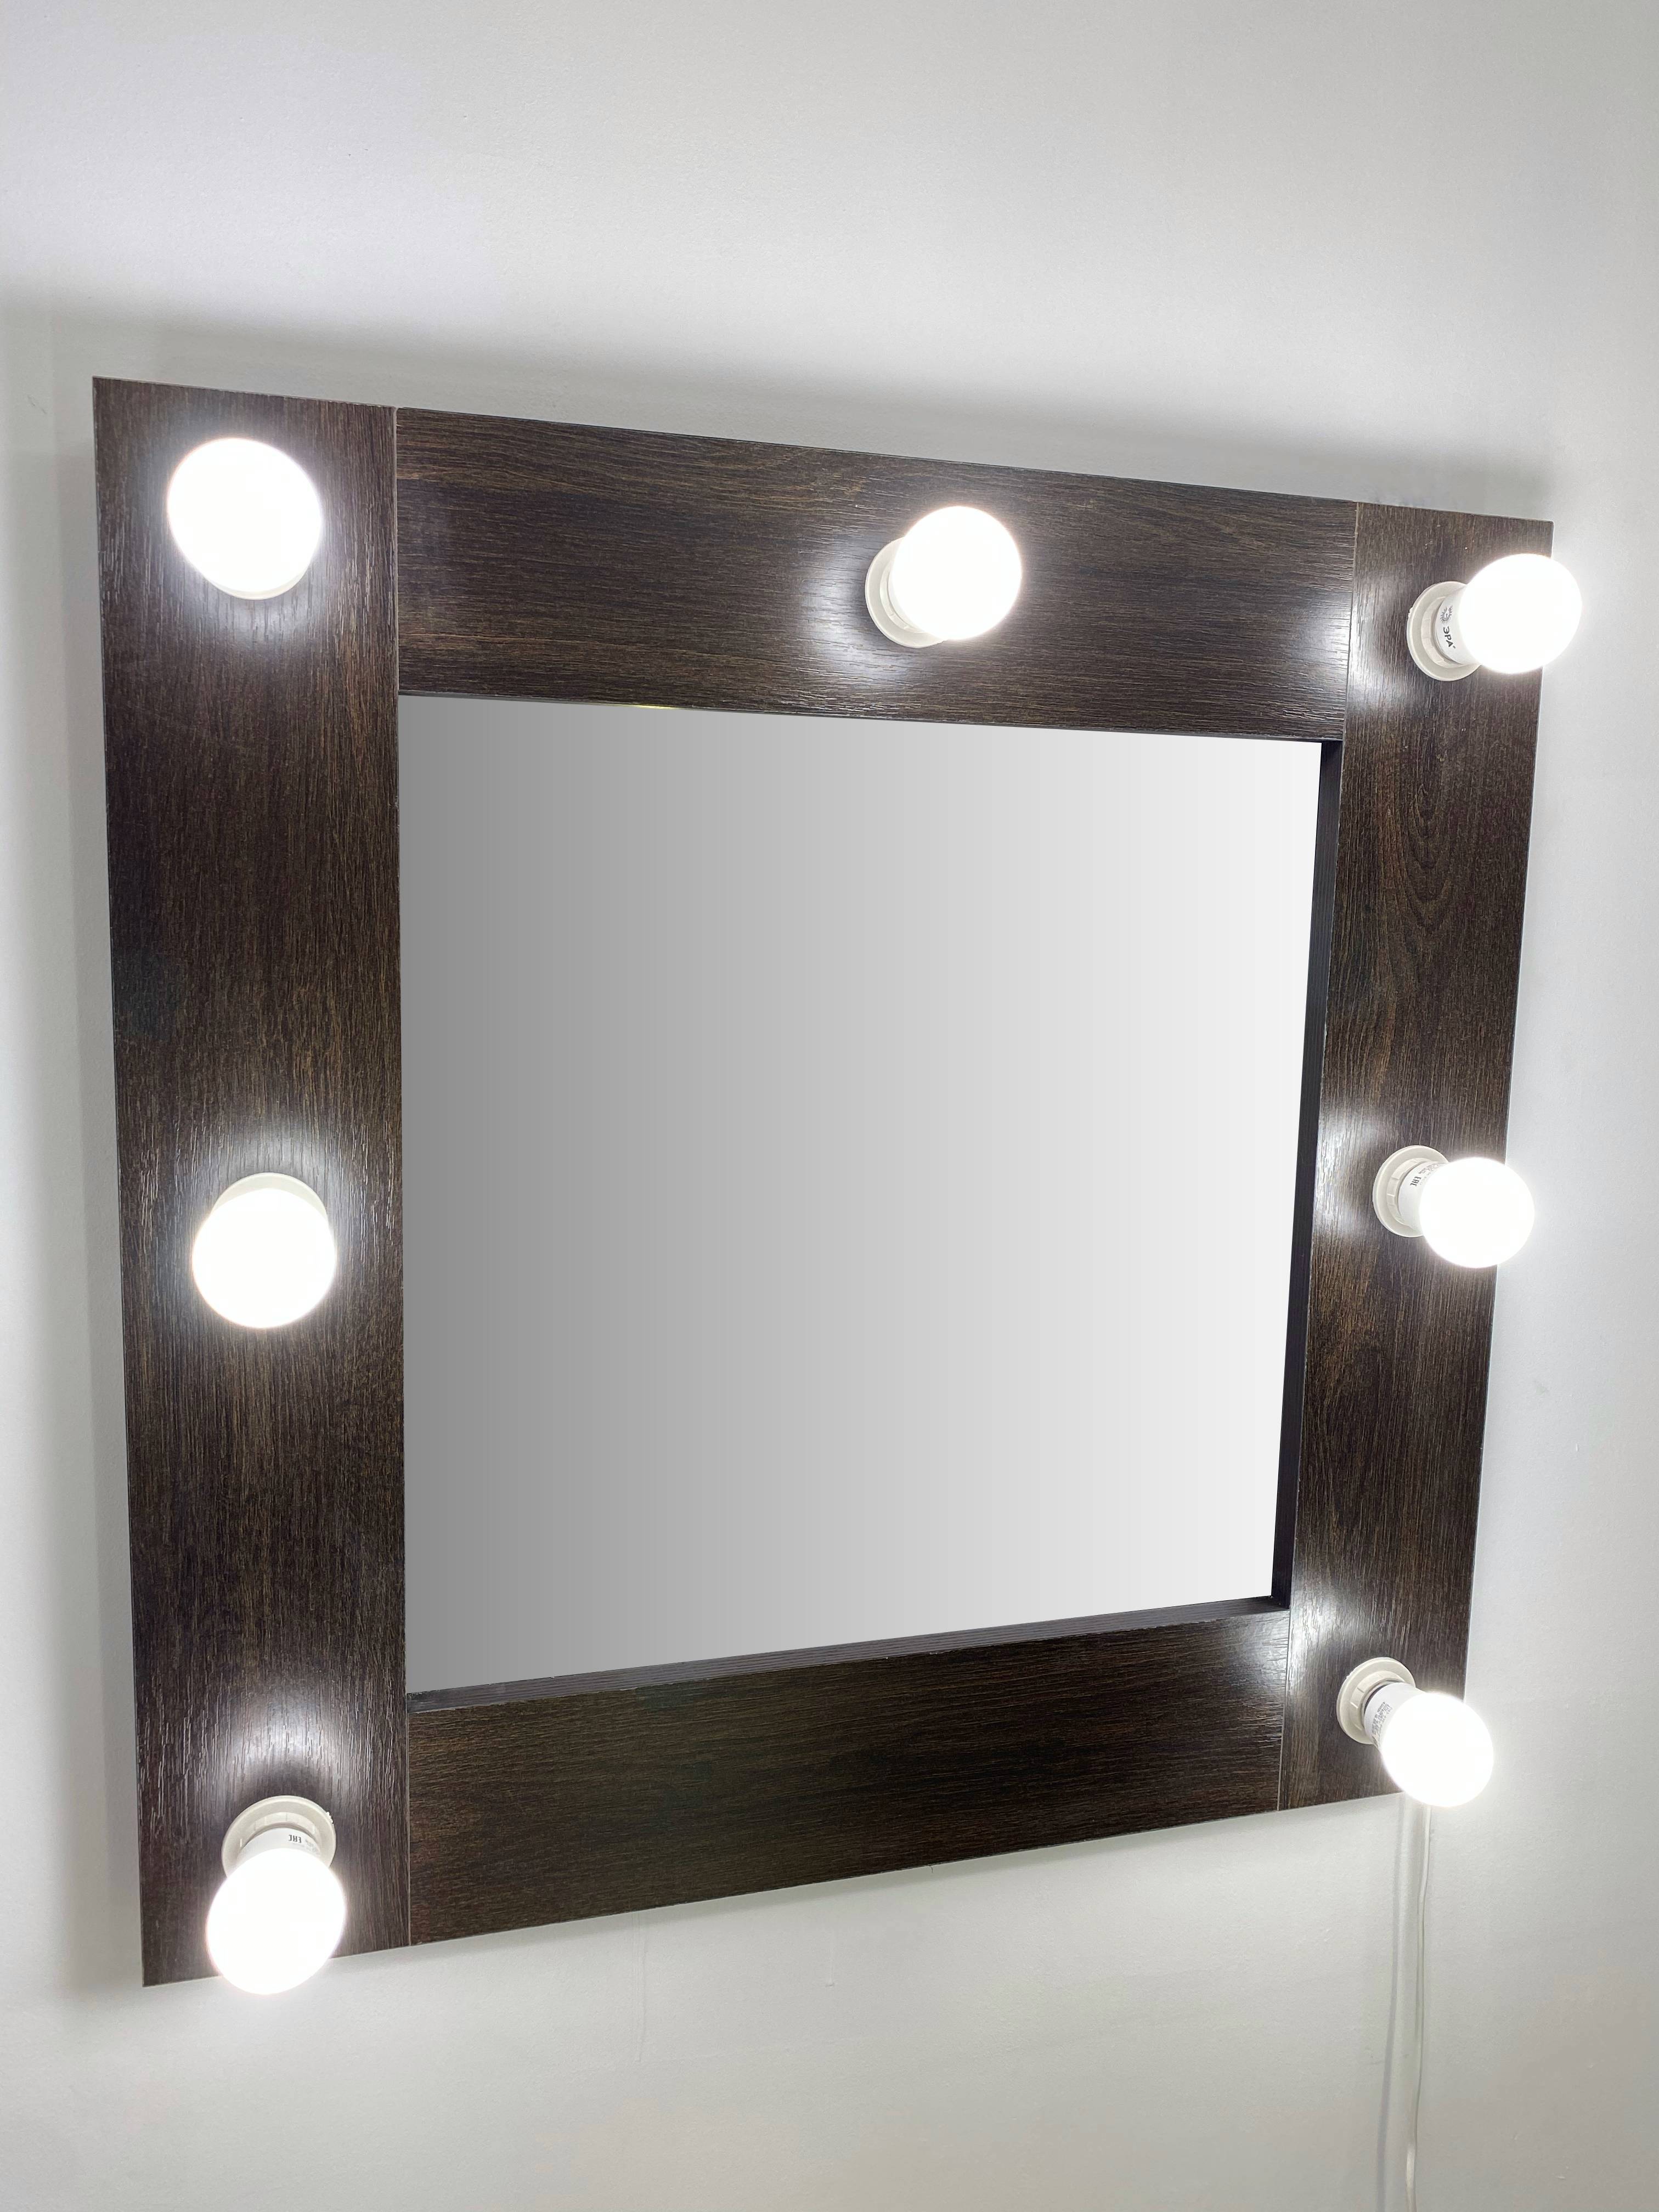 91053069 Гримерное зеркало с лампочками 60x60 см венге STLM-0458979 BEAUTYUP